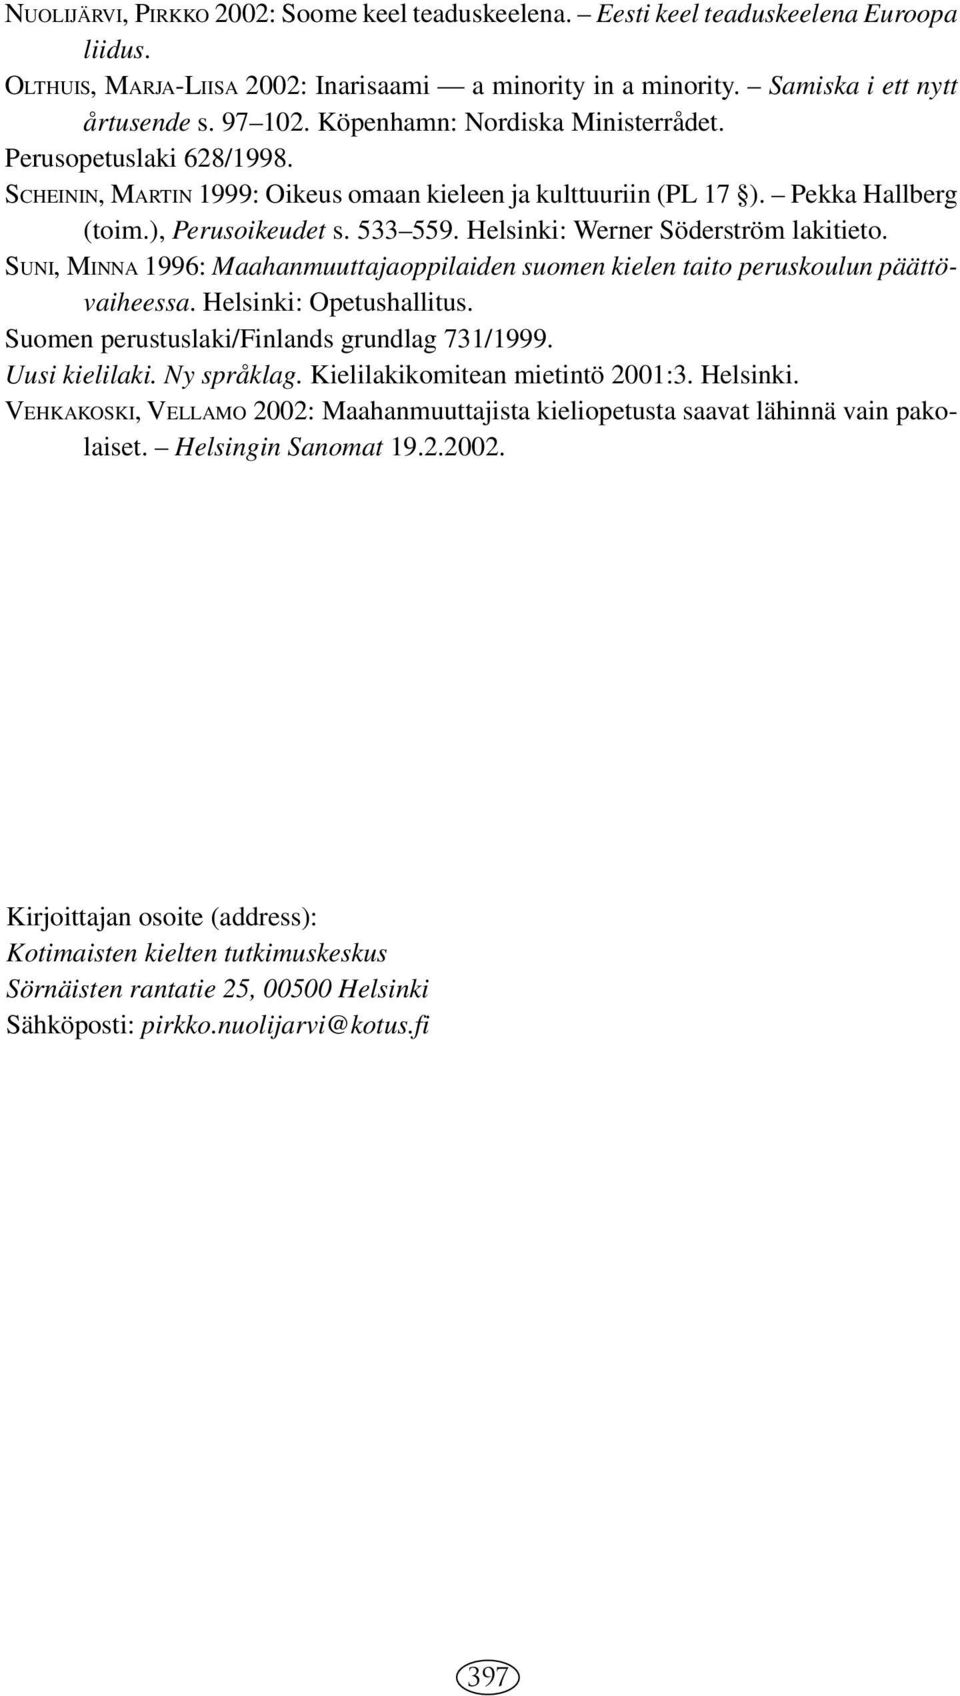 Helsinki: Werner Söderström lakitieto. SUNI, MINNA 1996: Maahanmuuttajaoppilaiden suomen kielen taito peruskoulun päättövaiheessa. Helsinki: Opetushallitus.